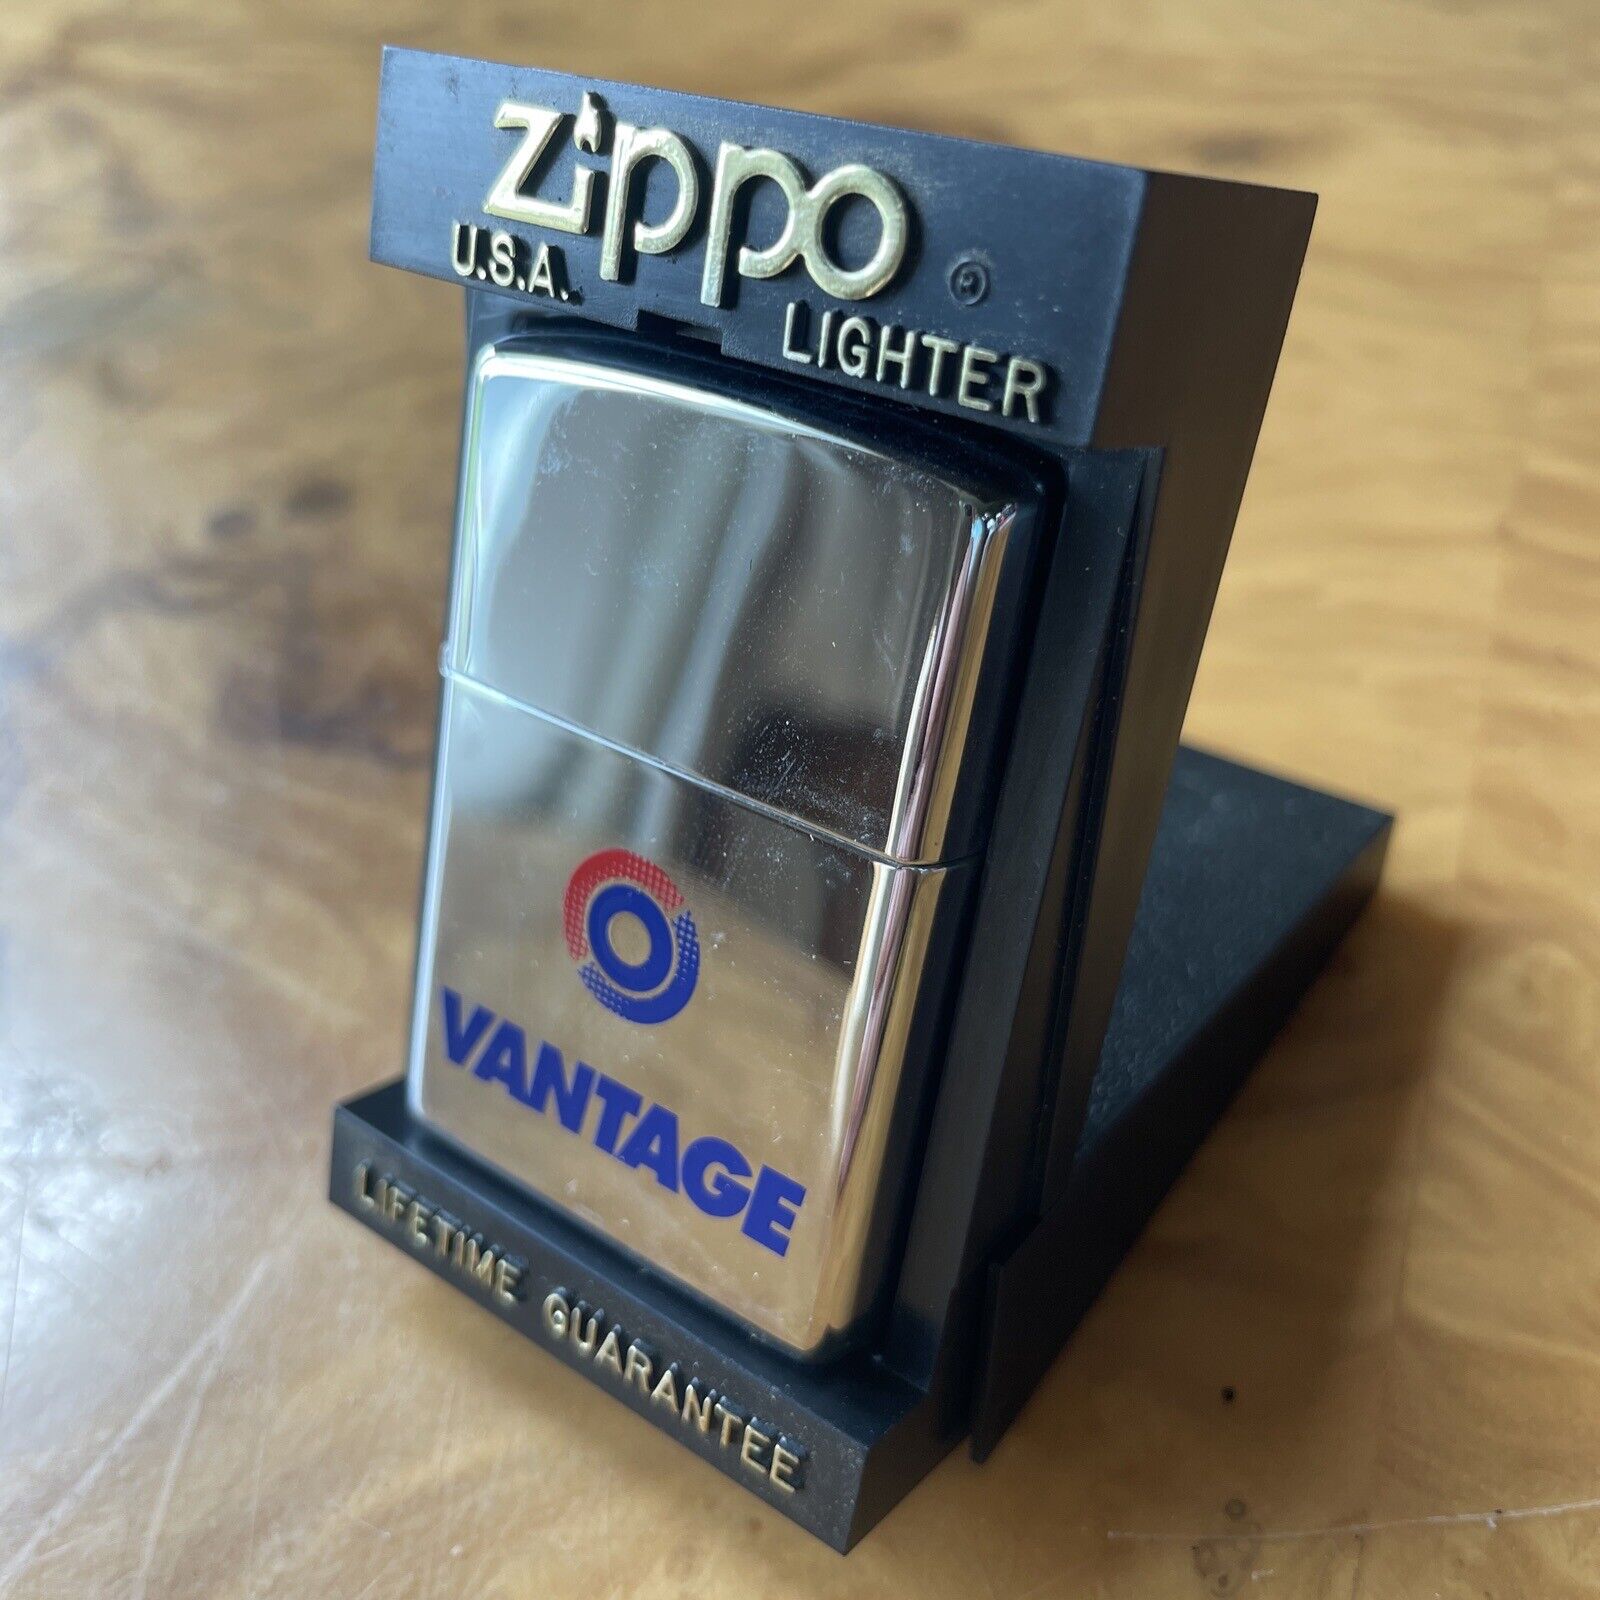 Zippo lighter VANTAGE Cigarettes 1997 New In Box Limited Edition Chrome RARE